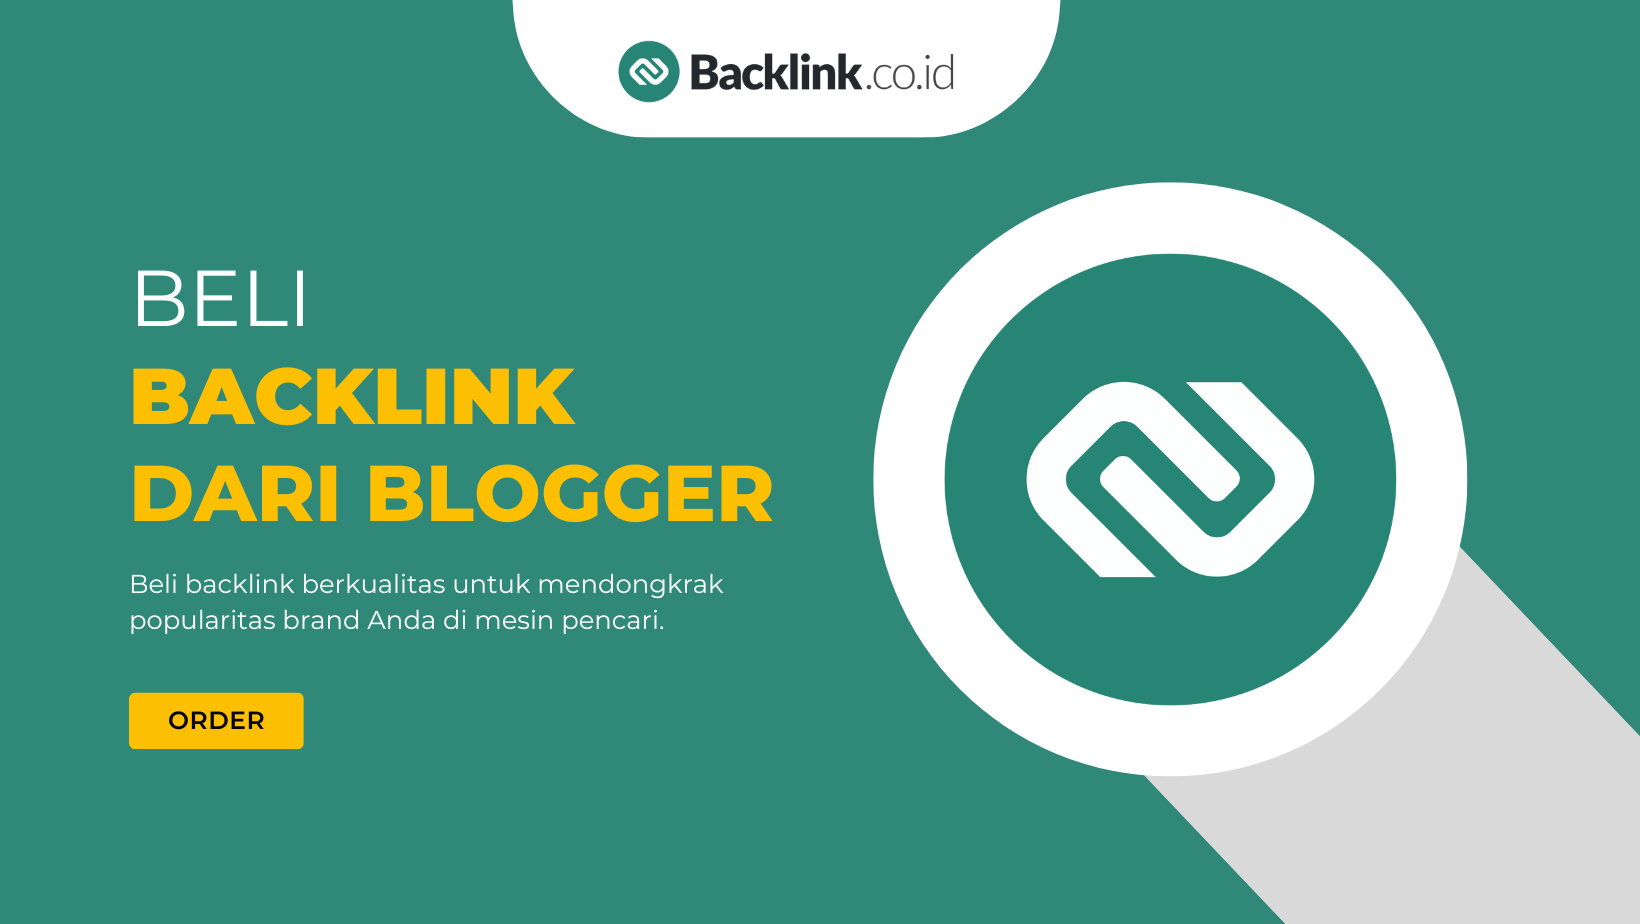 Beli Backlink Berkualitas dari Blogger Indonesia Backlink.co.id